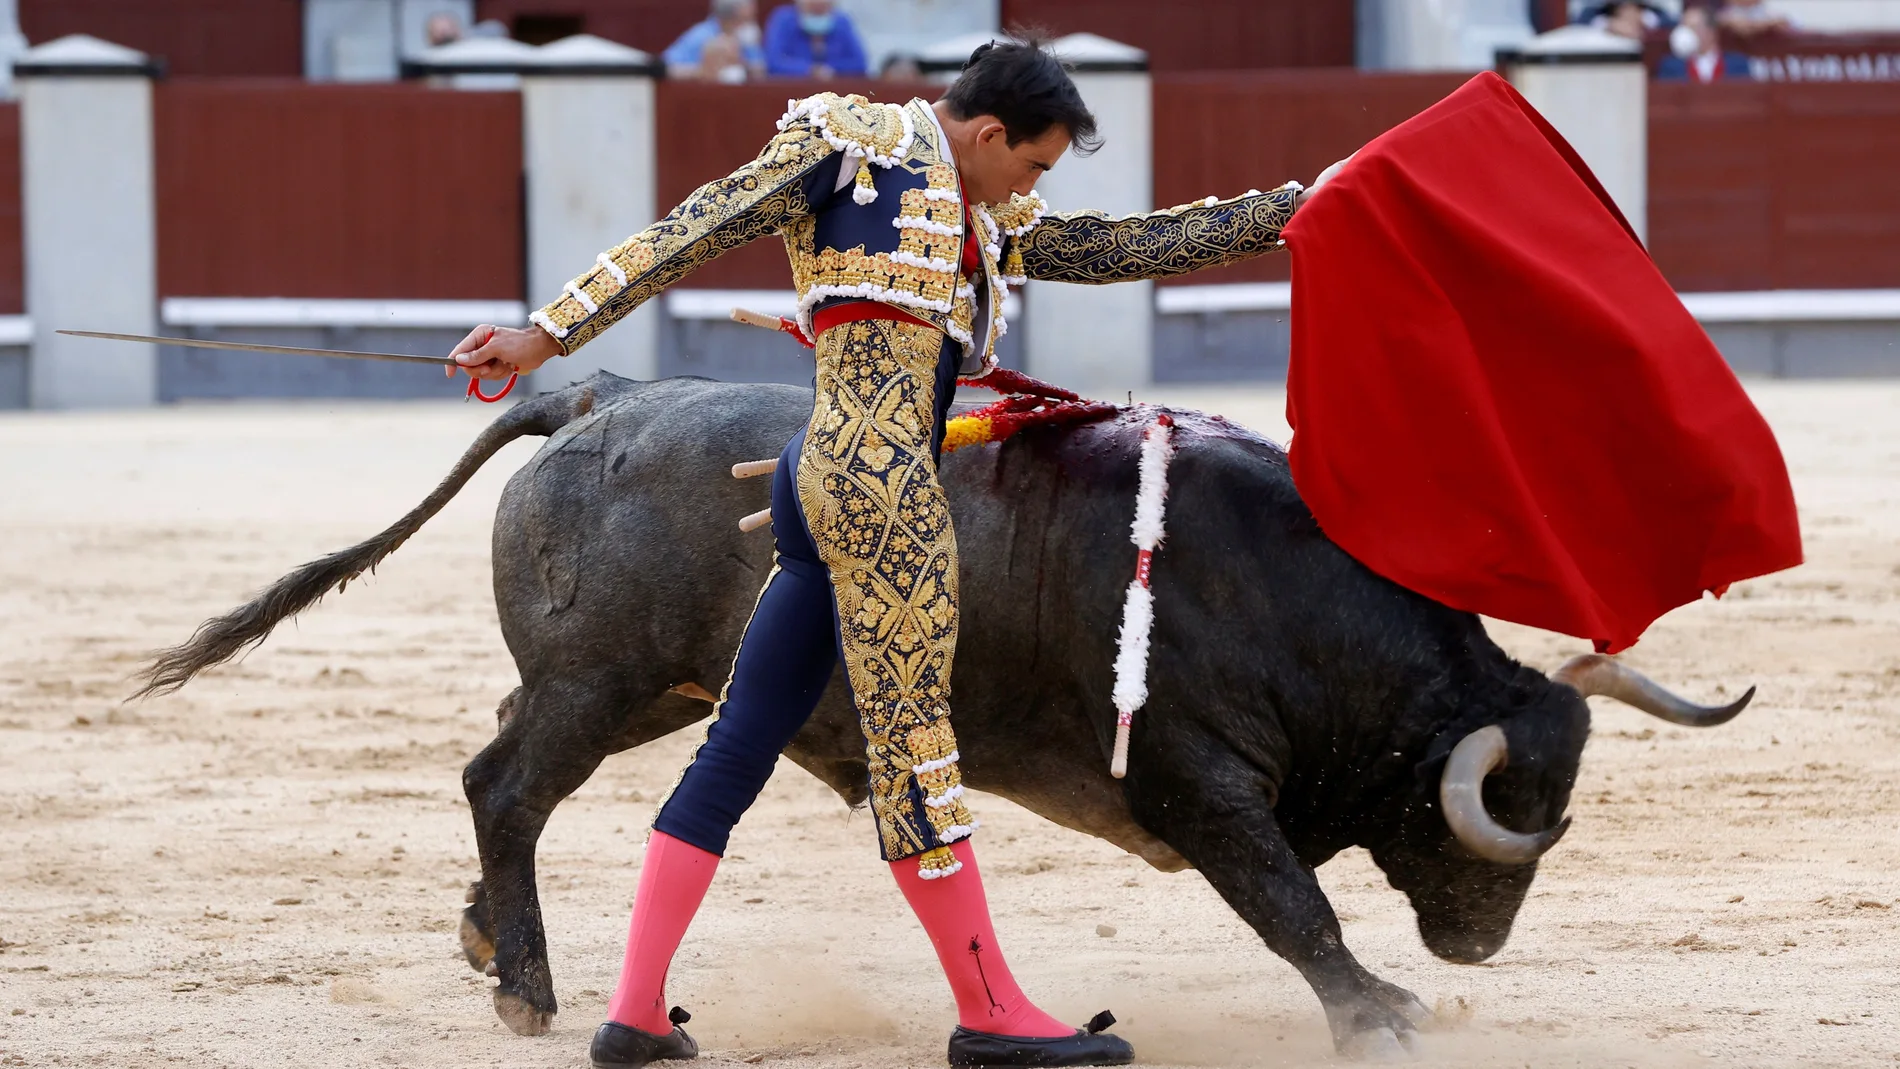 Fortes, el torero que siempre vuelve, reaparecerá en Torrejón